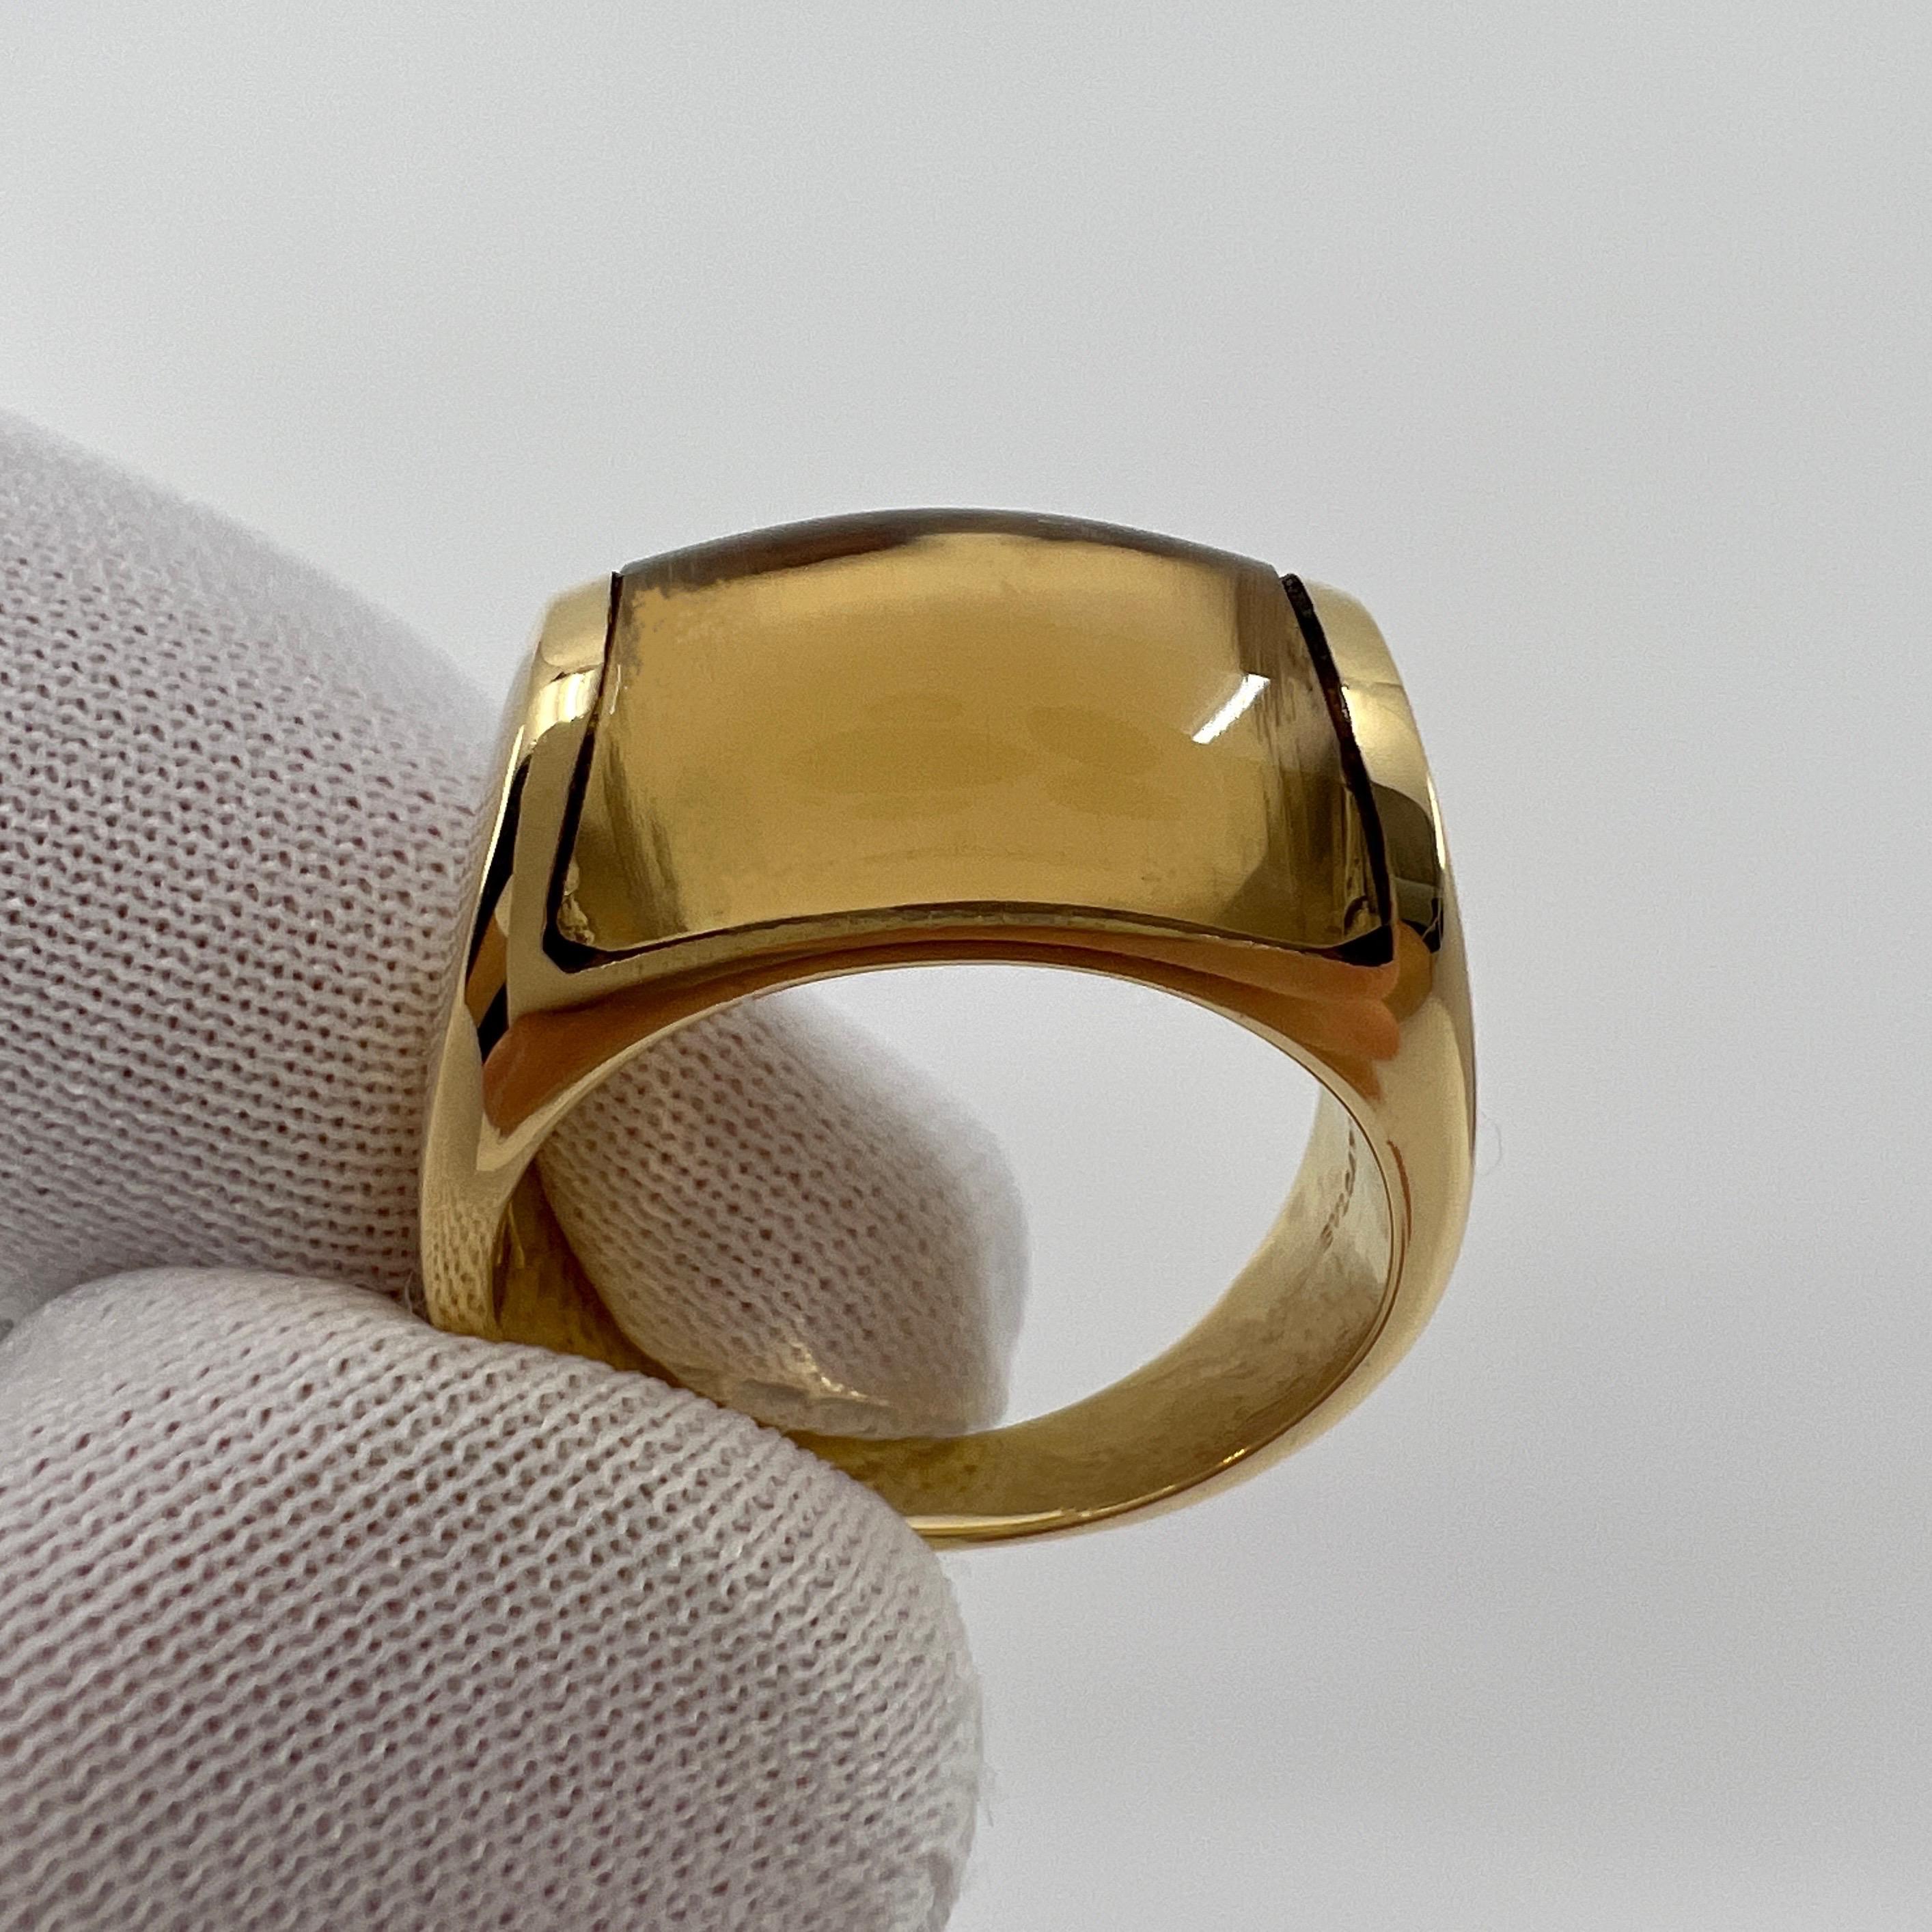 Rare Bvlgari Bulgari Tronchetto 18k Yellow Gold Yellow Citrine Ring with Box 1